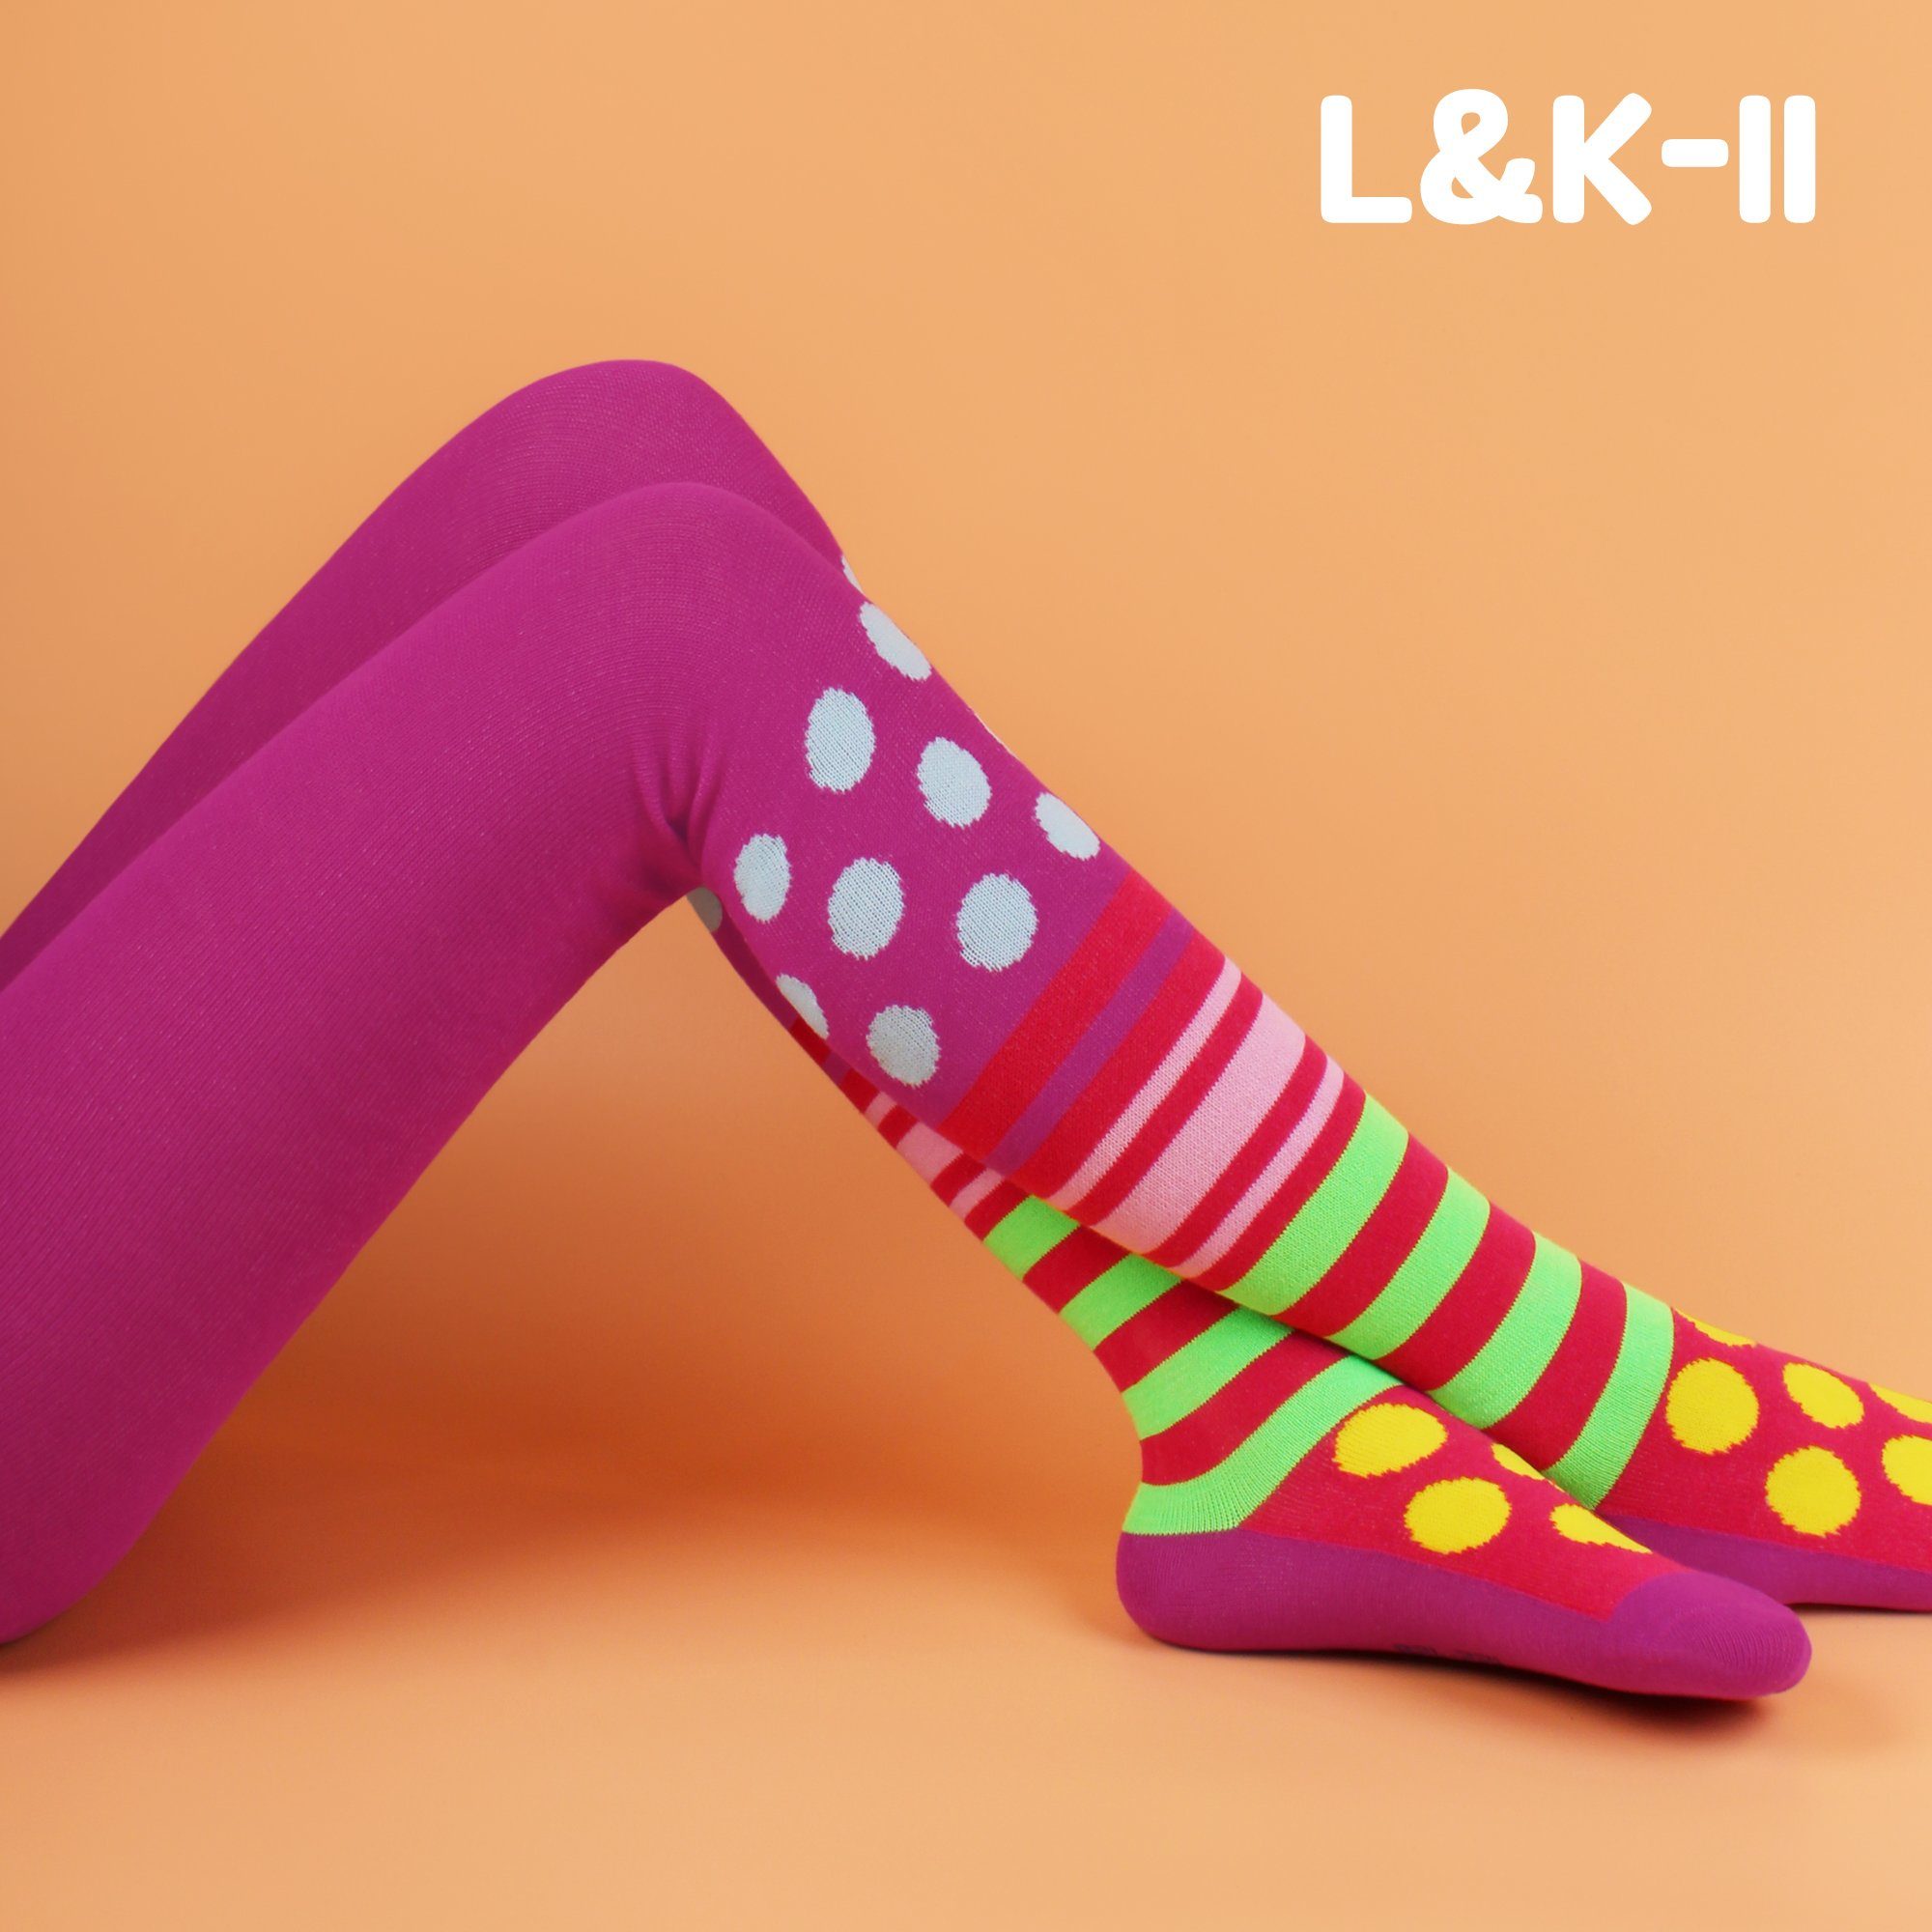 L&K-II Strumpfhose 2761 Mustern und mit Mehrfarbig Mädchen Punkte Streifen blickdicht (3er-Pack) Strumpfhosen